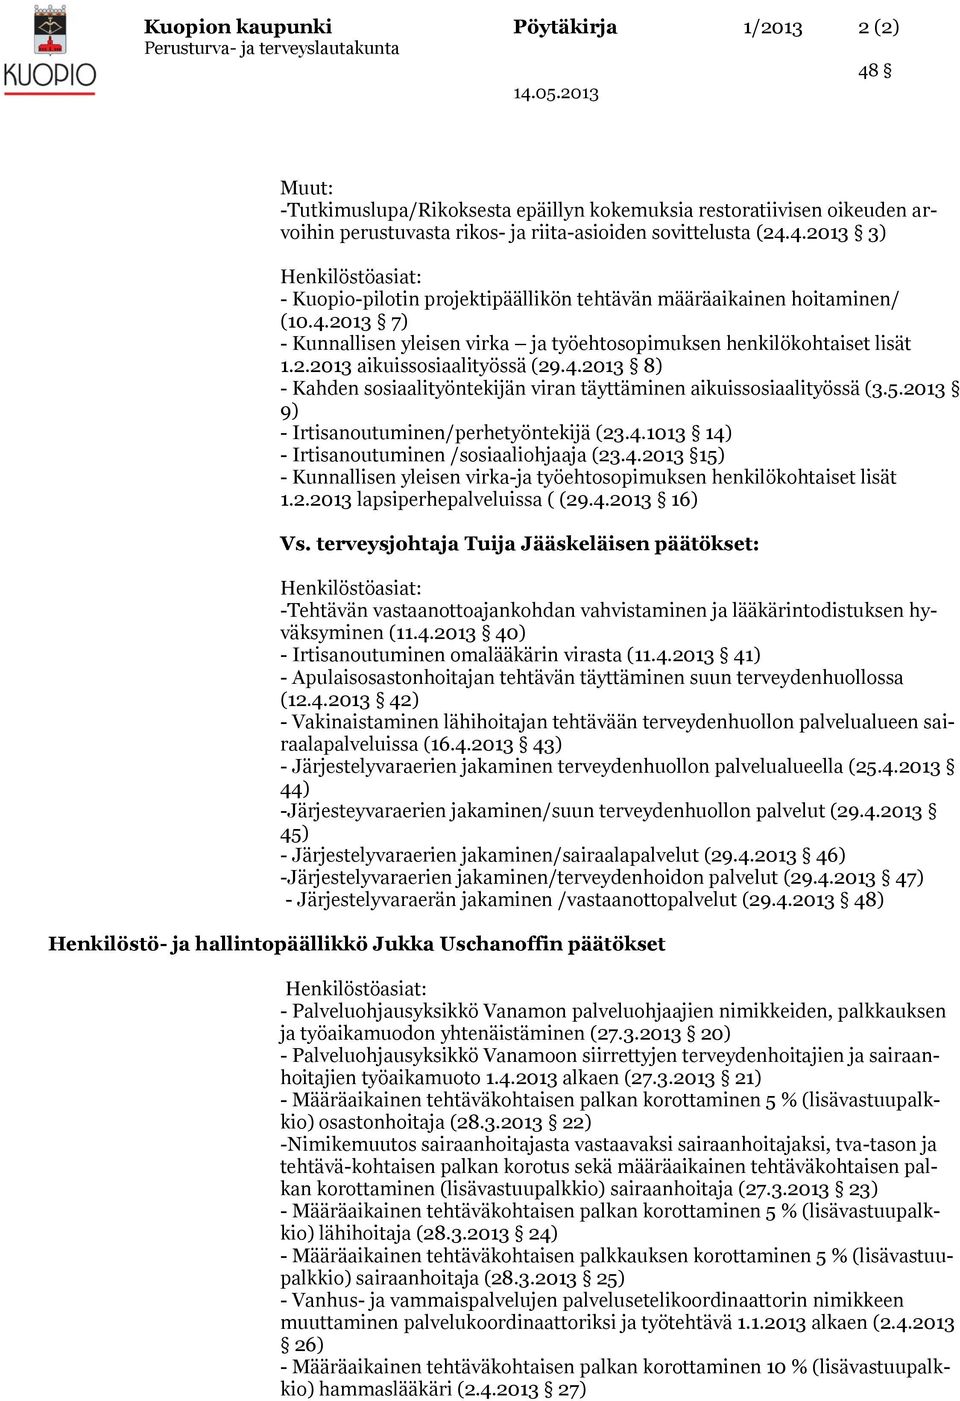 4.2013 8) - Kahden sosiaalityöntekijän viran täyttäminen aikuissosiaalityössä (3.5.2013 9) - Irtisanoutuminen/perhetyöntekijä (23.4.1013 14) - Irtisanoutuminen /sosiaaliohjaaja (23.4.2013 15) - Kunnallisen yleisen virka-ja työehtosopimuksen henkilökohtaiset lisät 1.